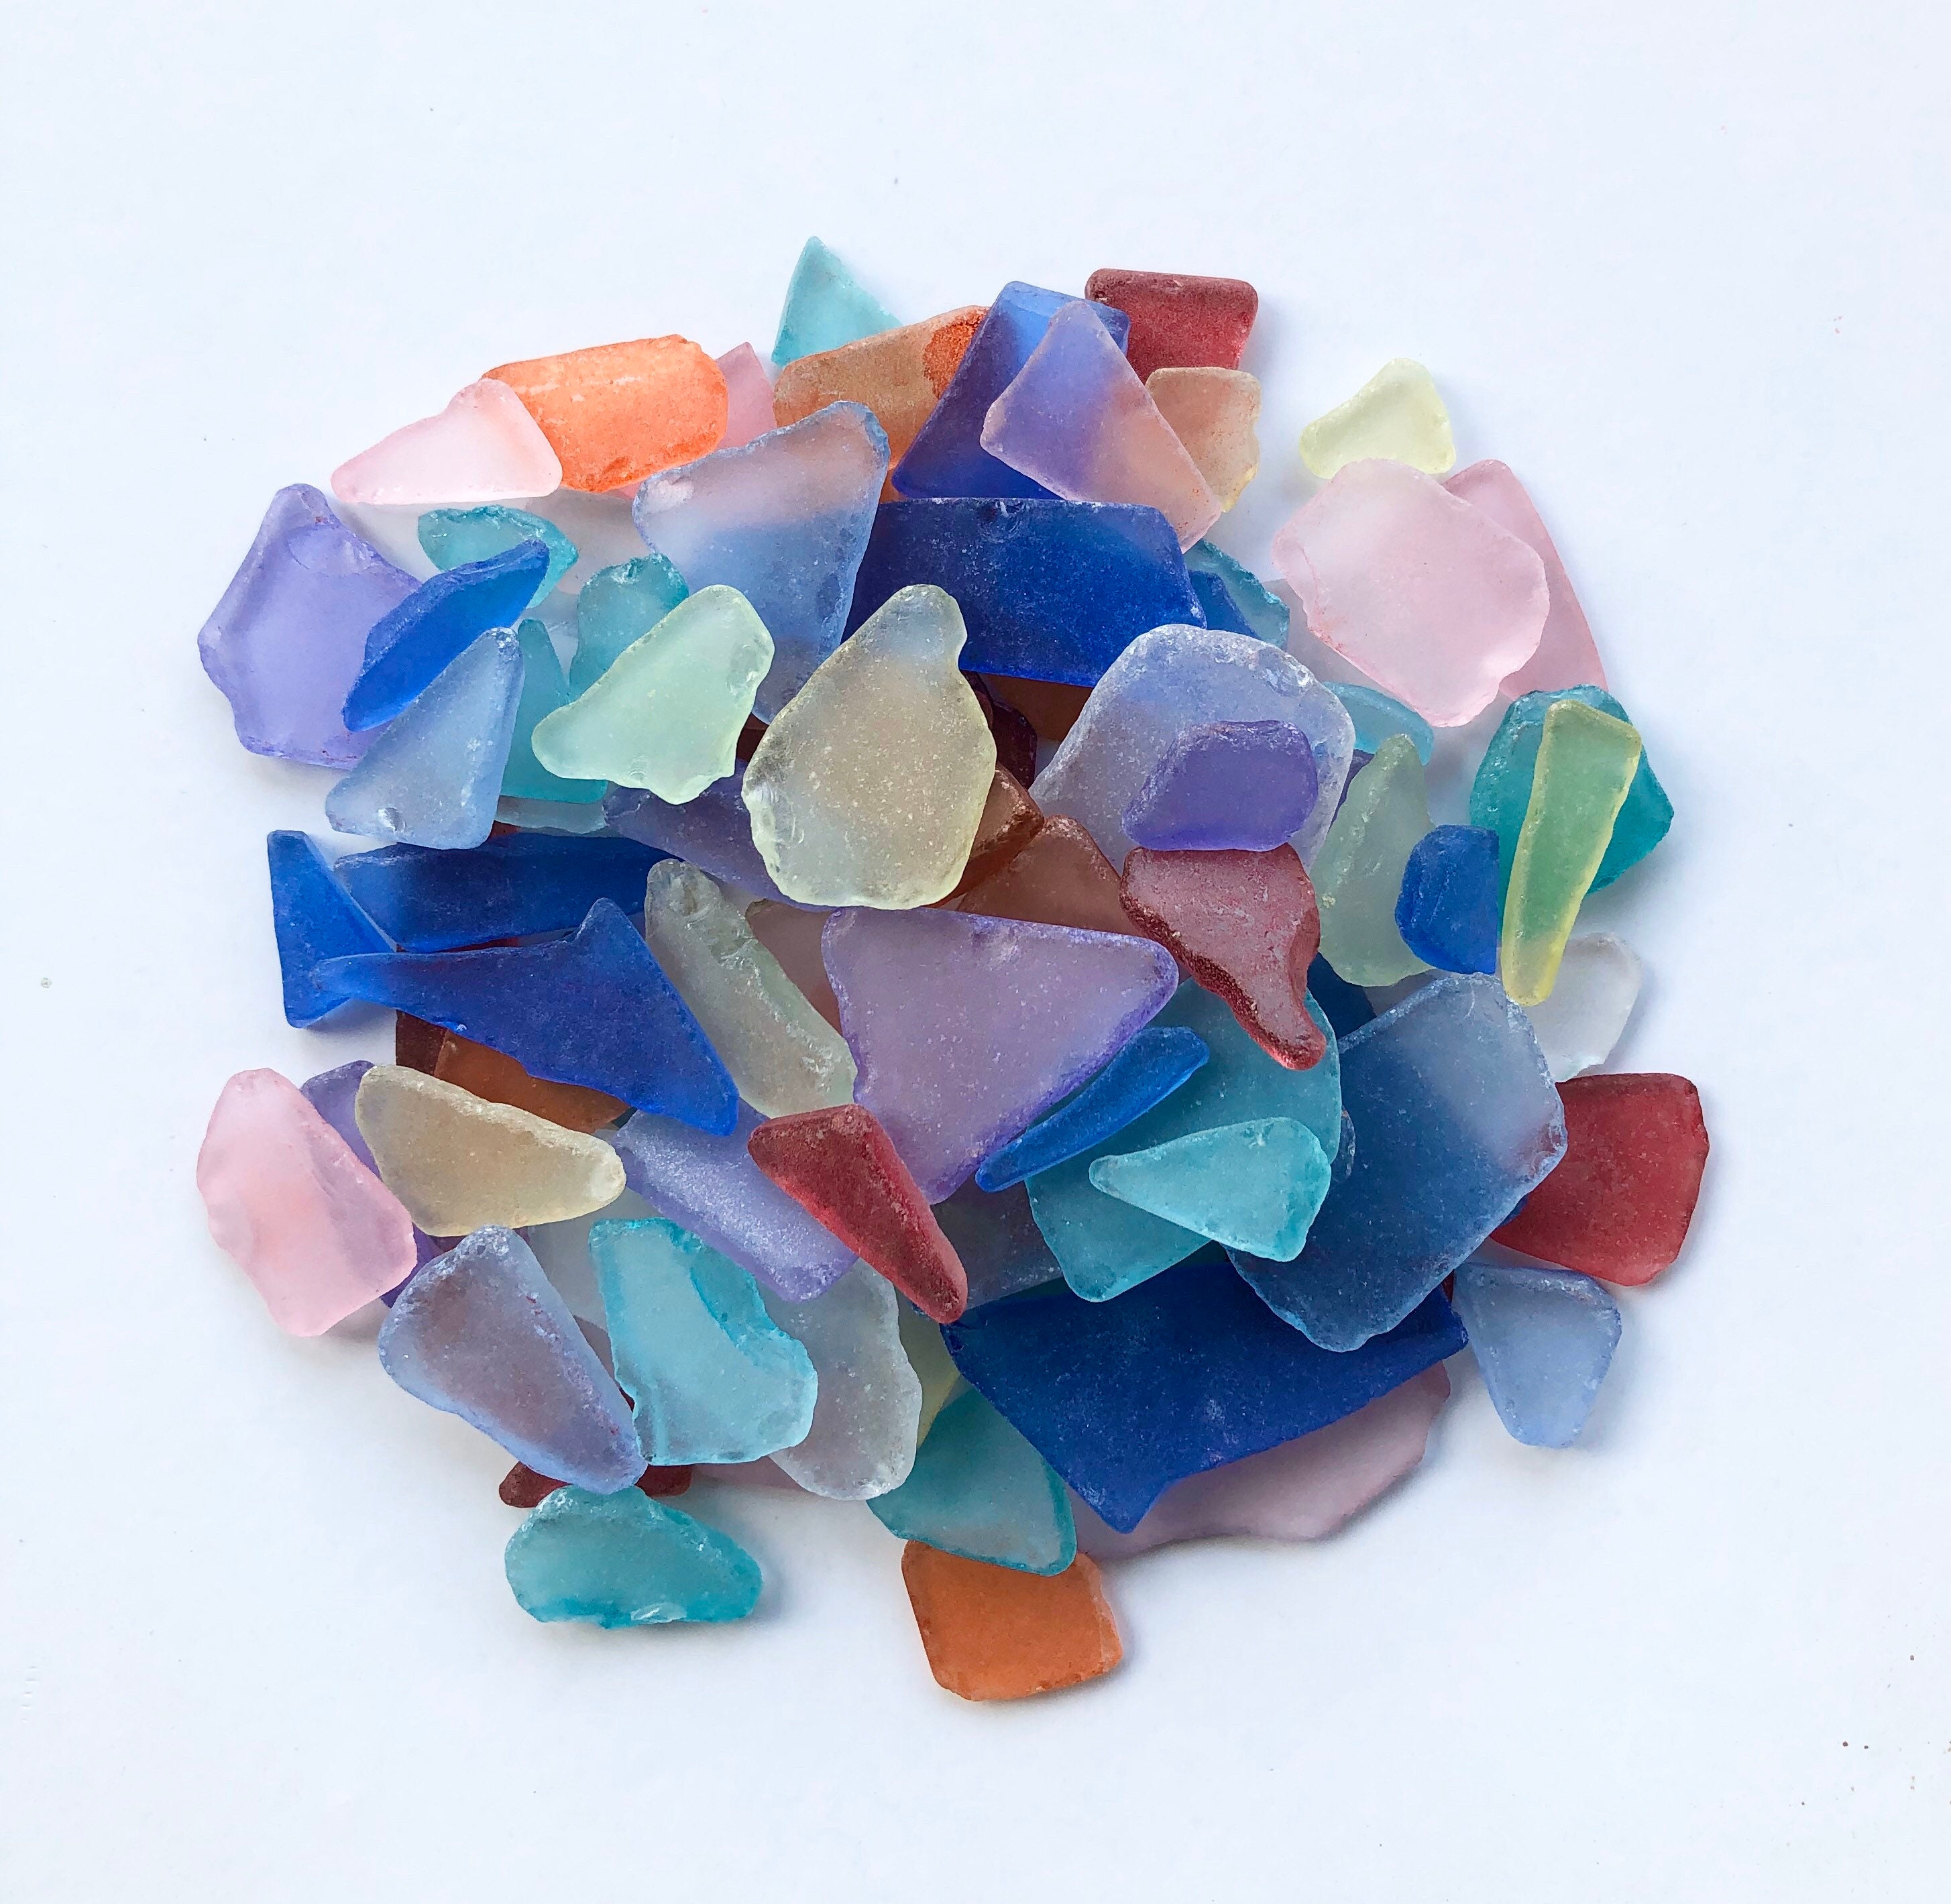 Sea Glass 11oz Caribbean Blue Sea Glass - Bulk Seaglass Pieces for Beach  Decor & Crafts